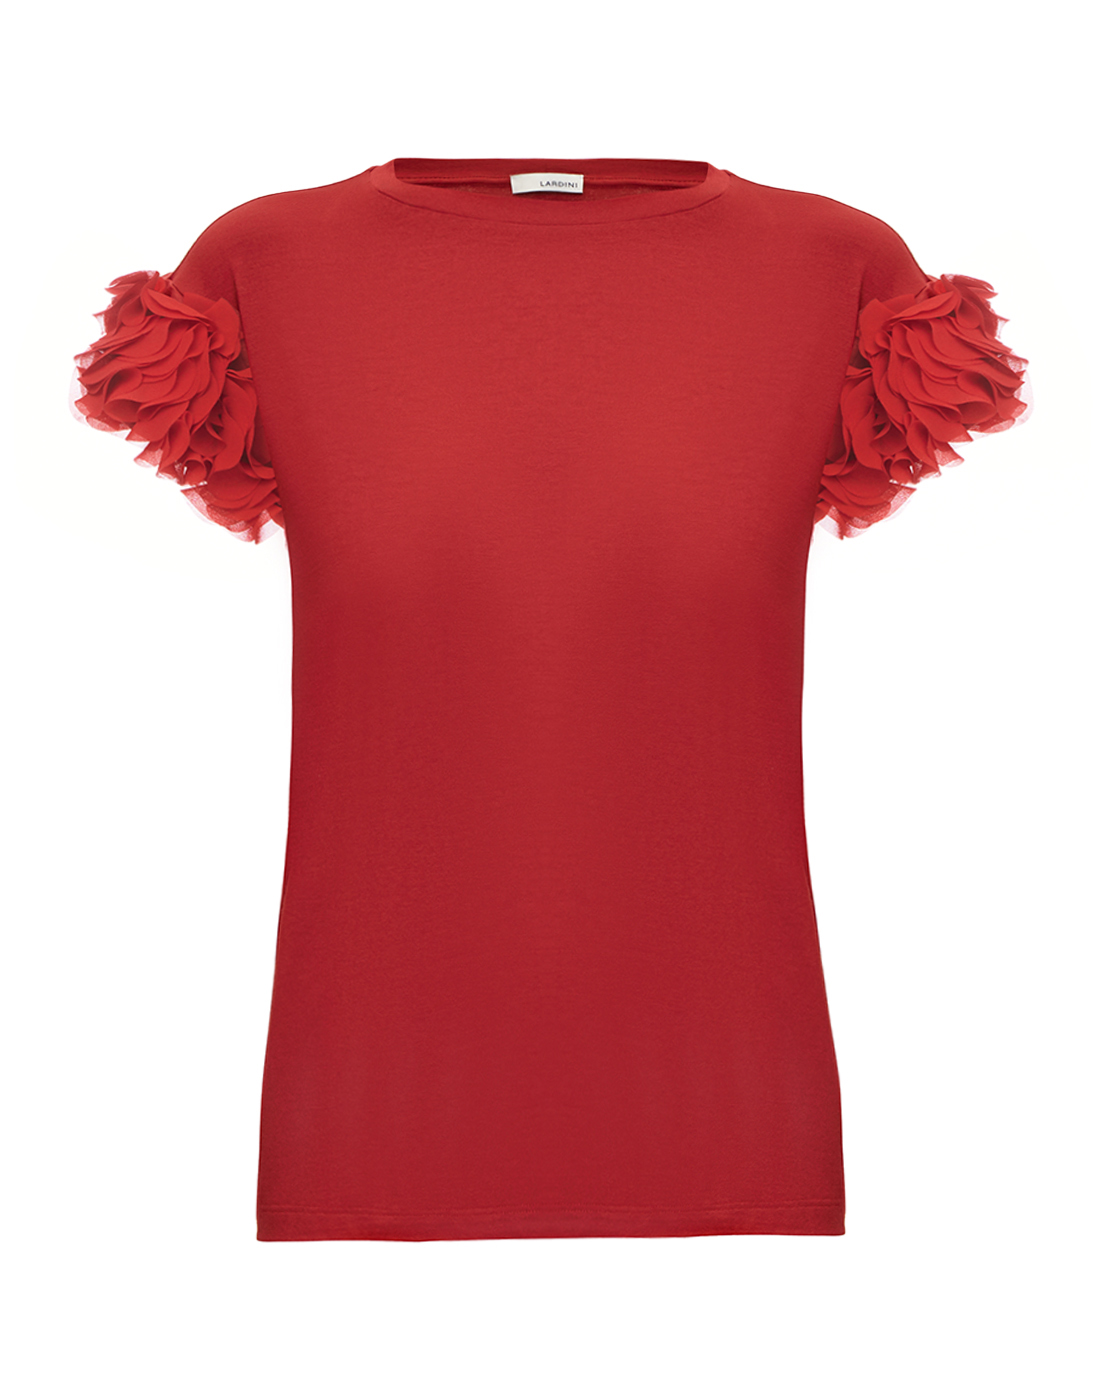 Жіноча червона футболка з рюшами-1